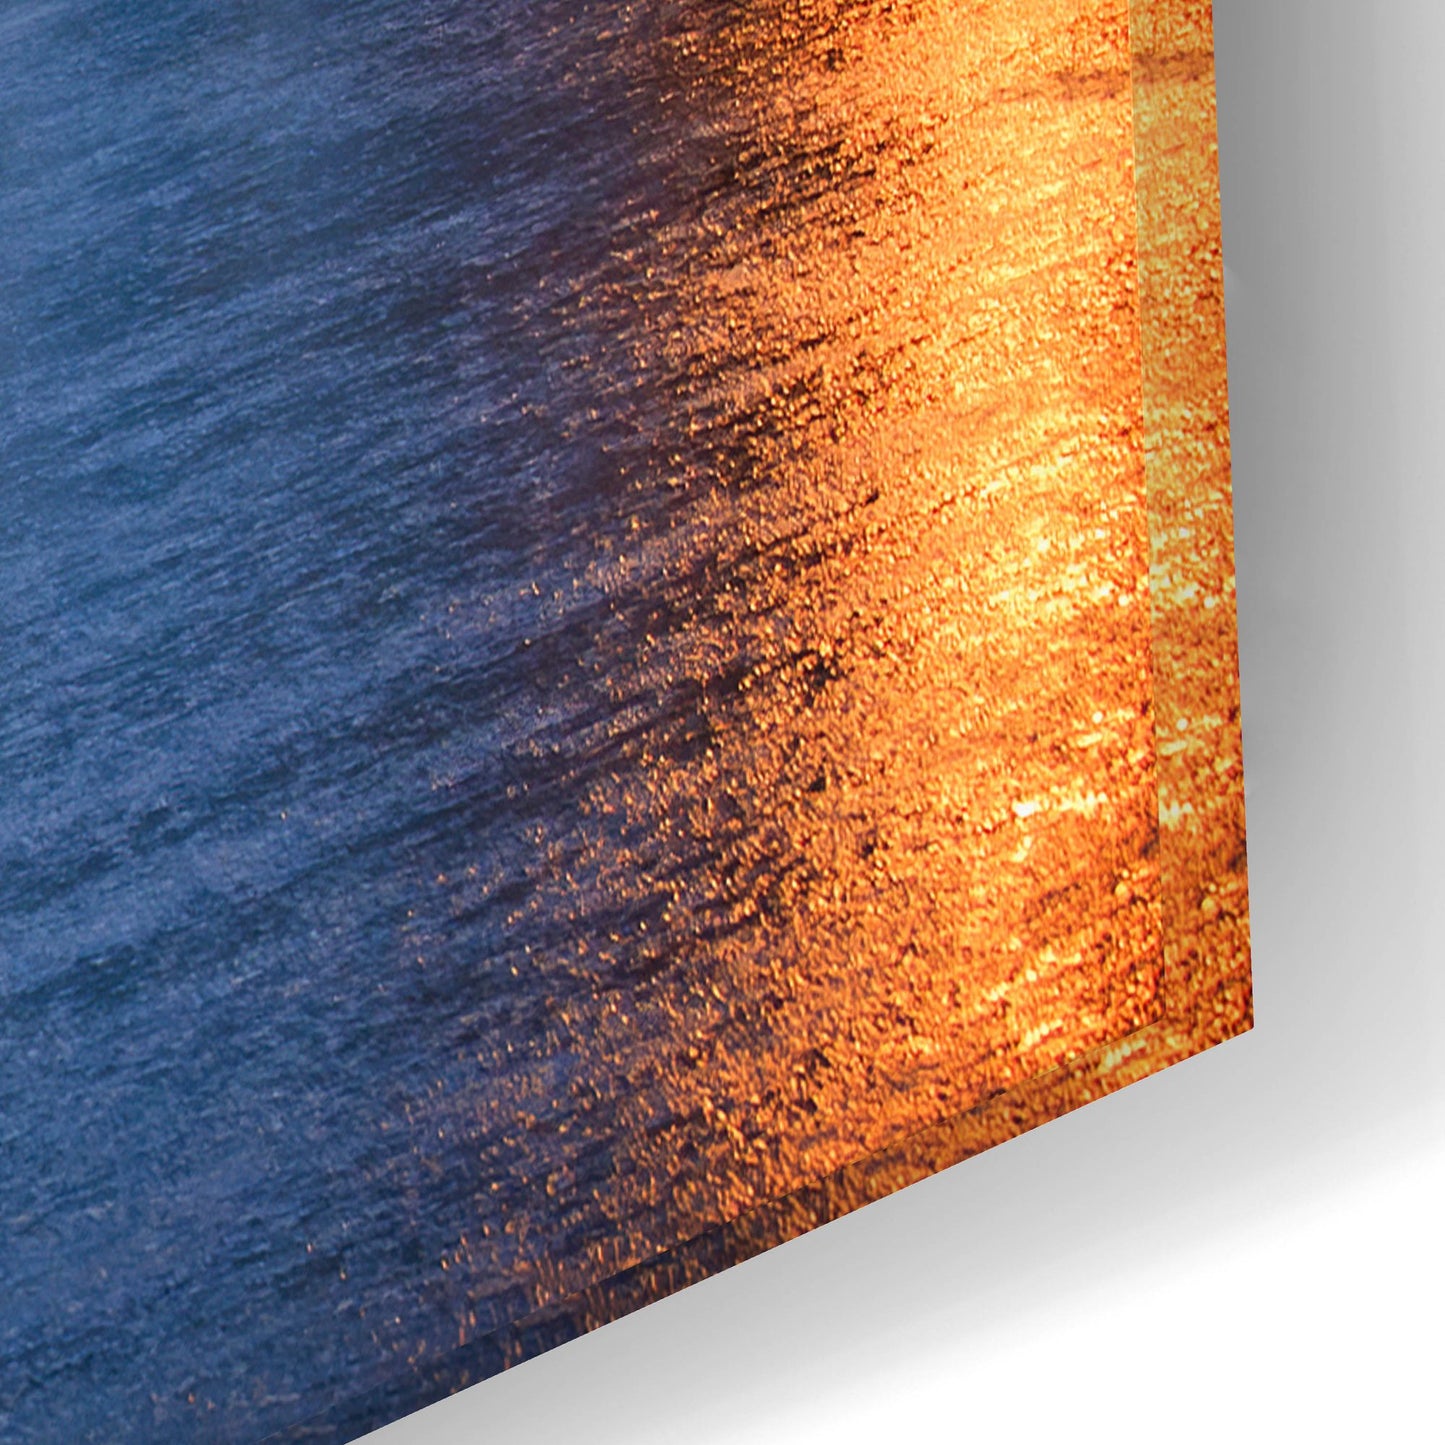 Epic Art ' Quiet Dawn On Mackinac Island' by Adam Romanowicz, Acrylic Glass Wall Art,24x16